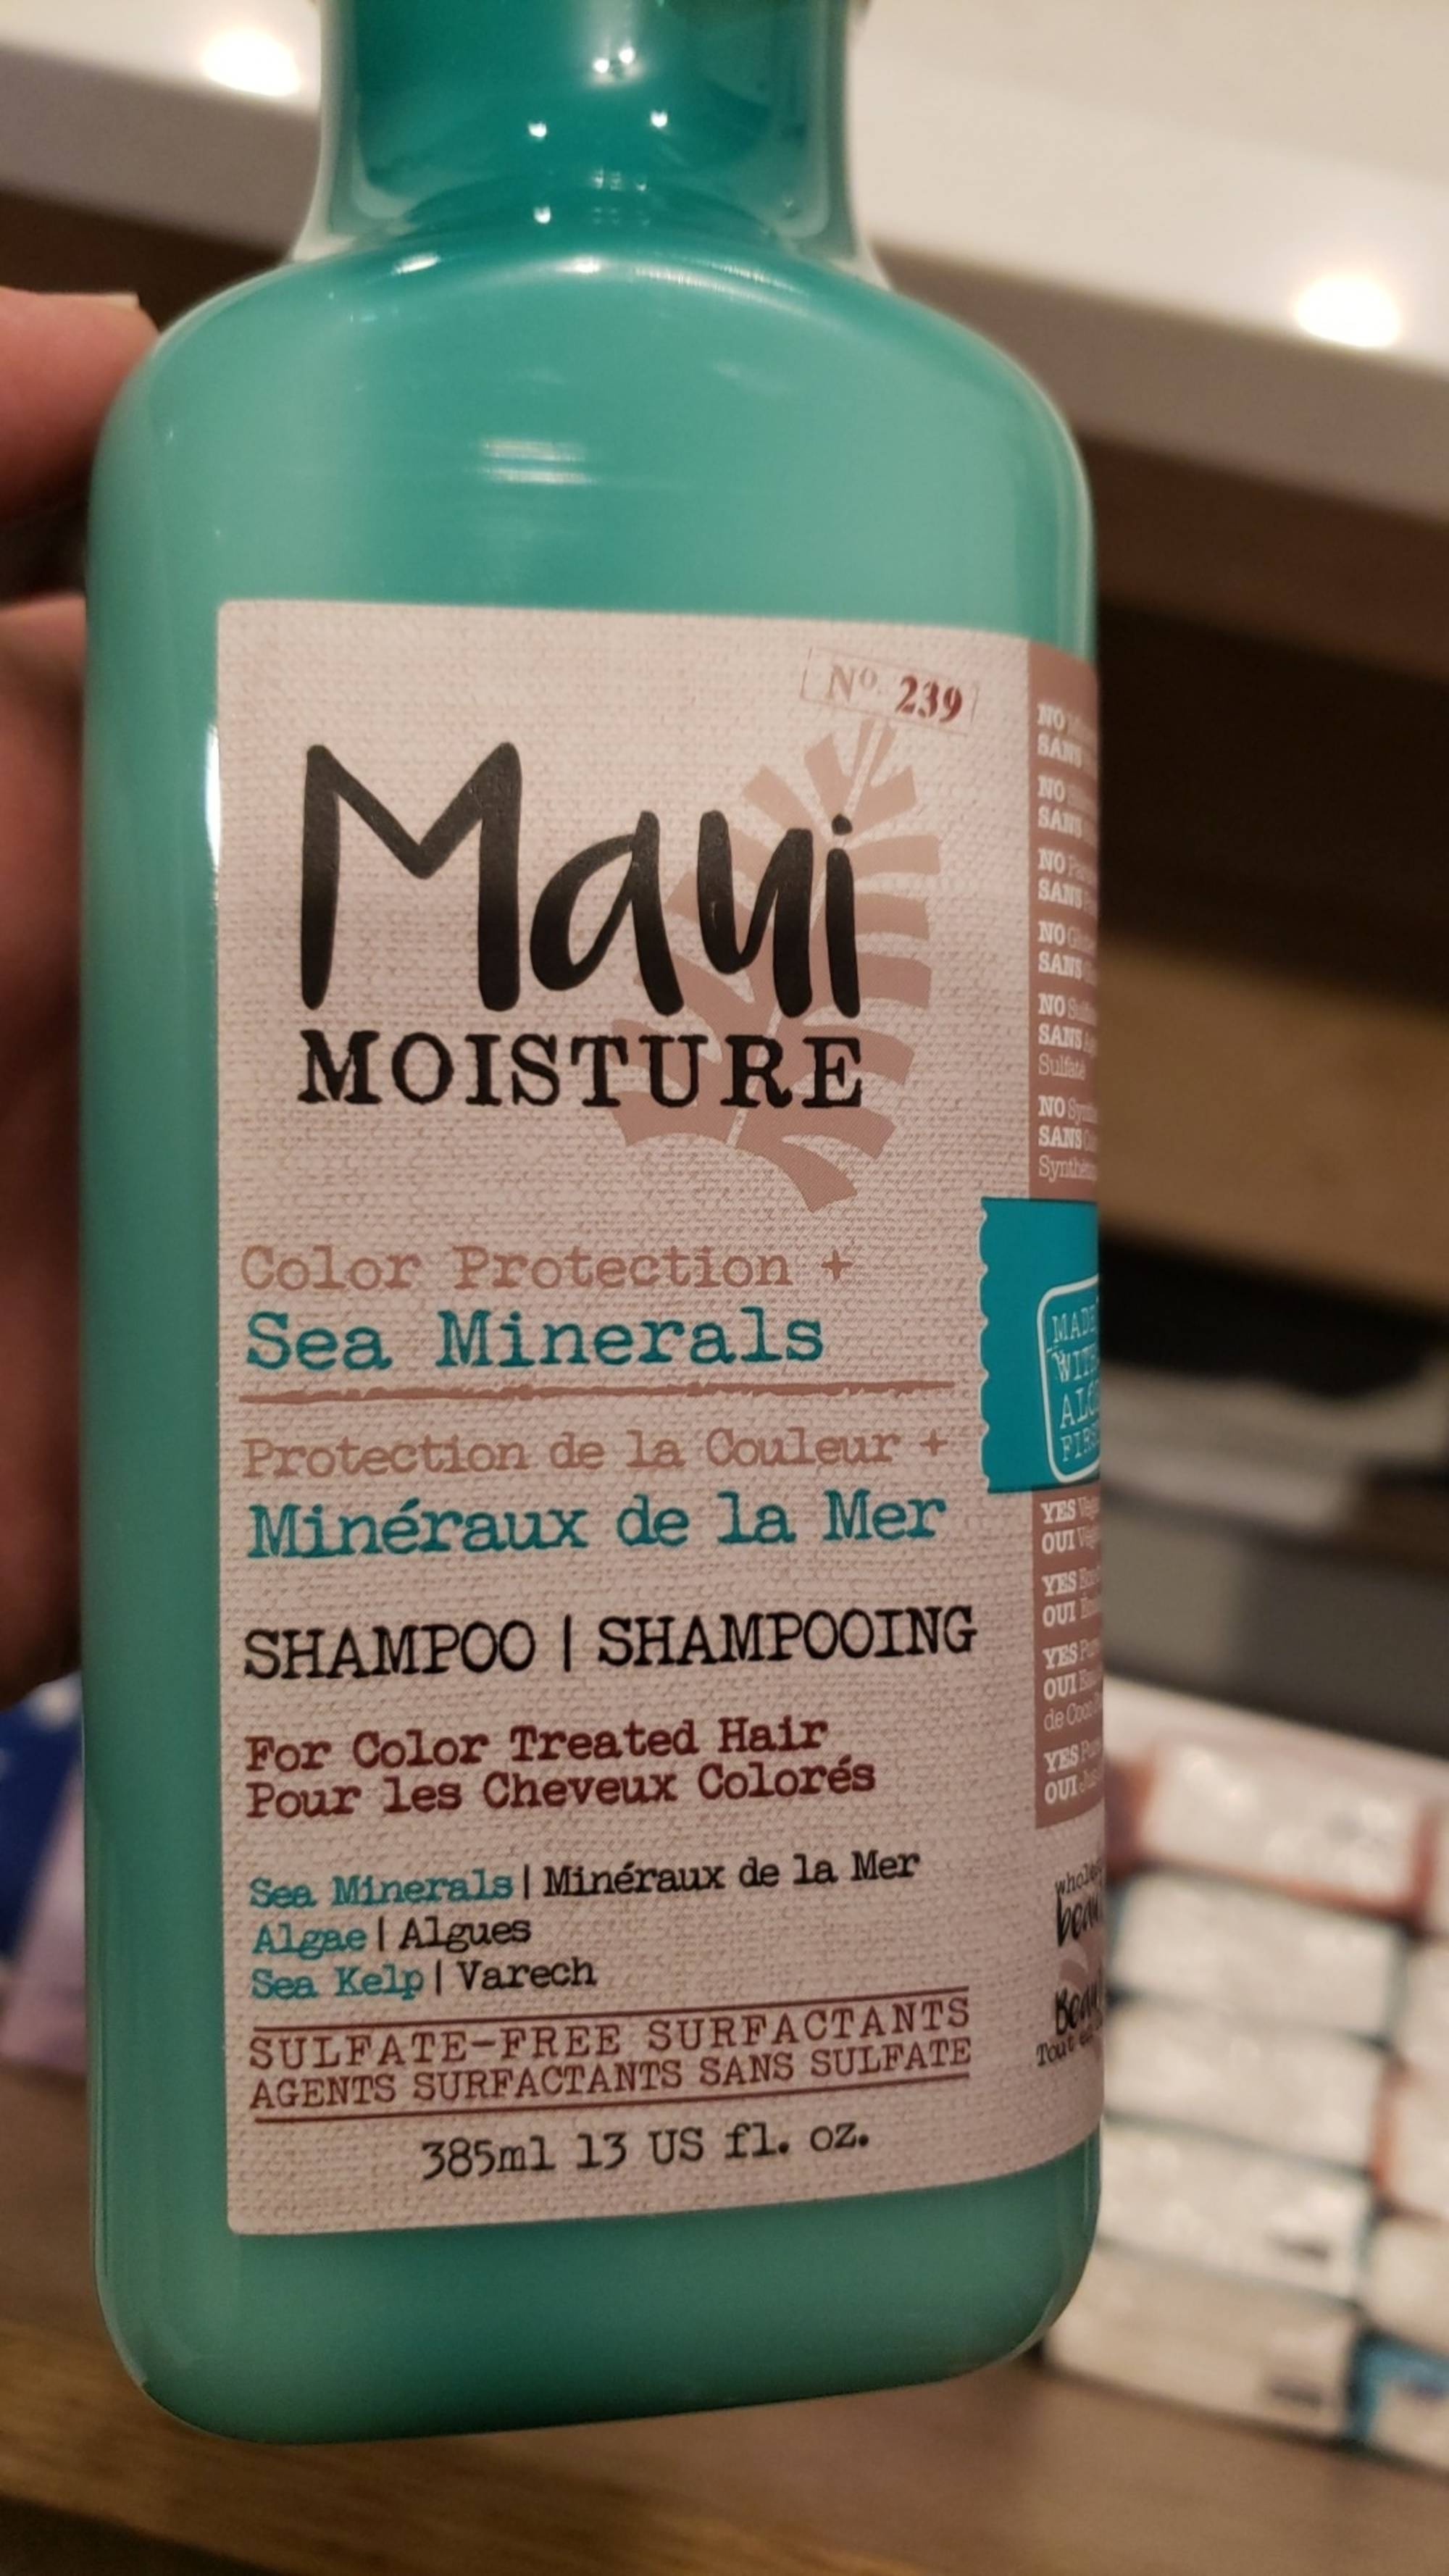 MAUI MOISTURE - Protection de la couleur + minéraux de la mer - Shampooing